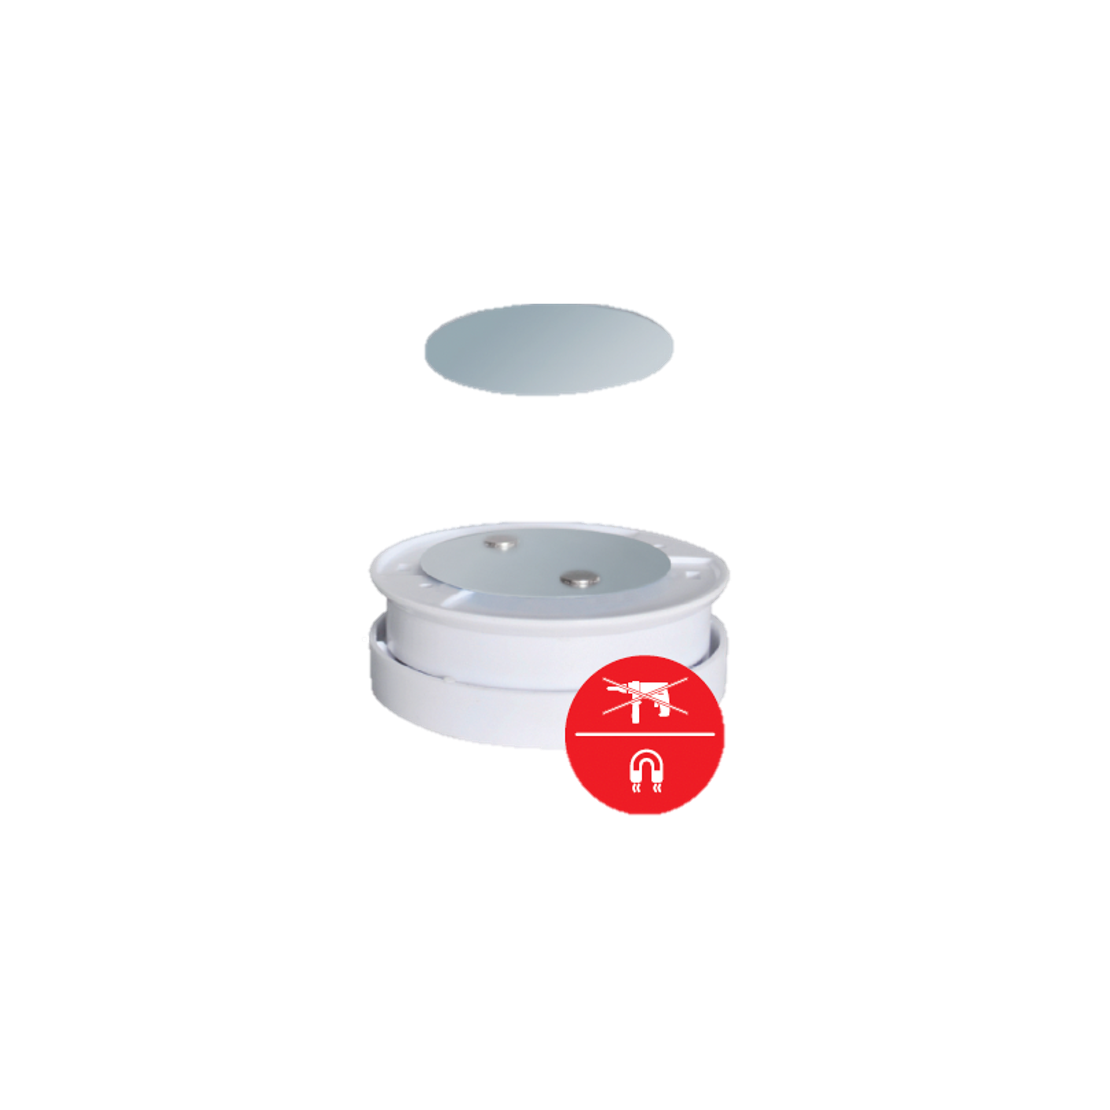 Support magnétique pour détecteur de fumée, Paquet de 5, Ø 50 mm,  Autocollant, Plaquettes 3M, Support magnétique pour Une Fixation Facile  sans perçage ni vis, plaquette adhésive pour Ddtecteur de CO 